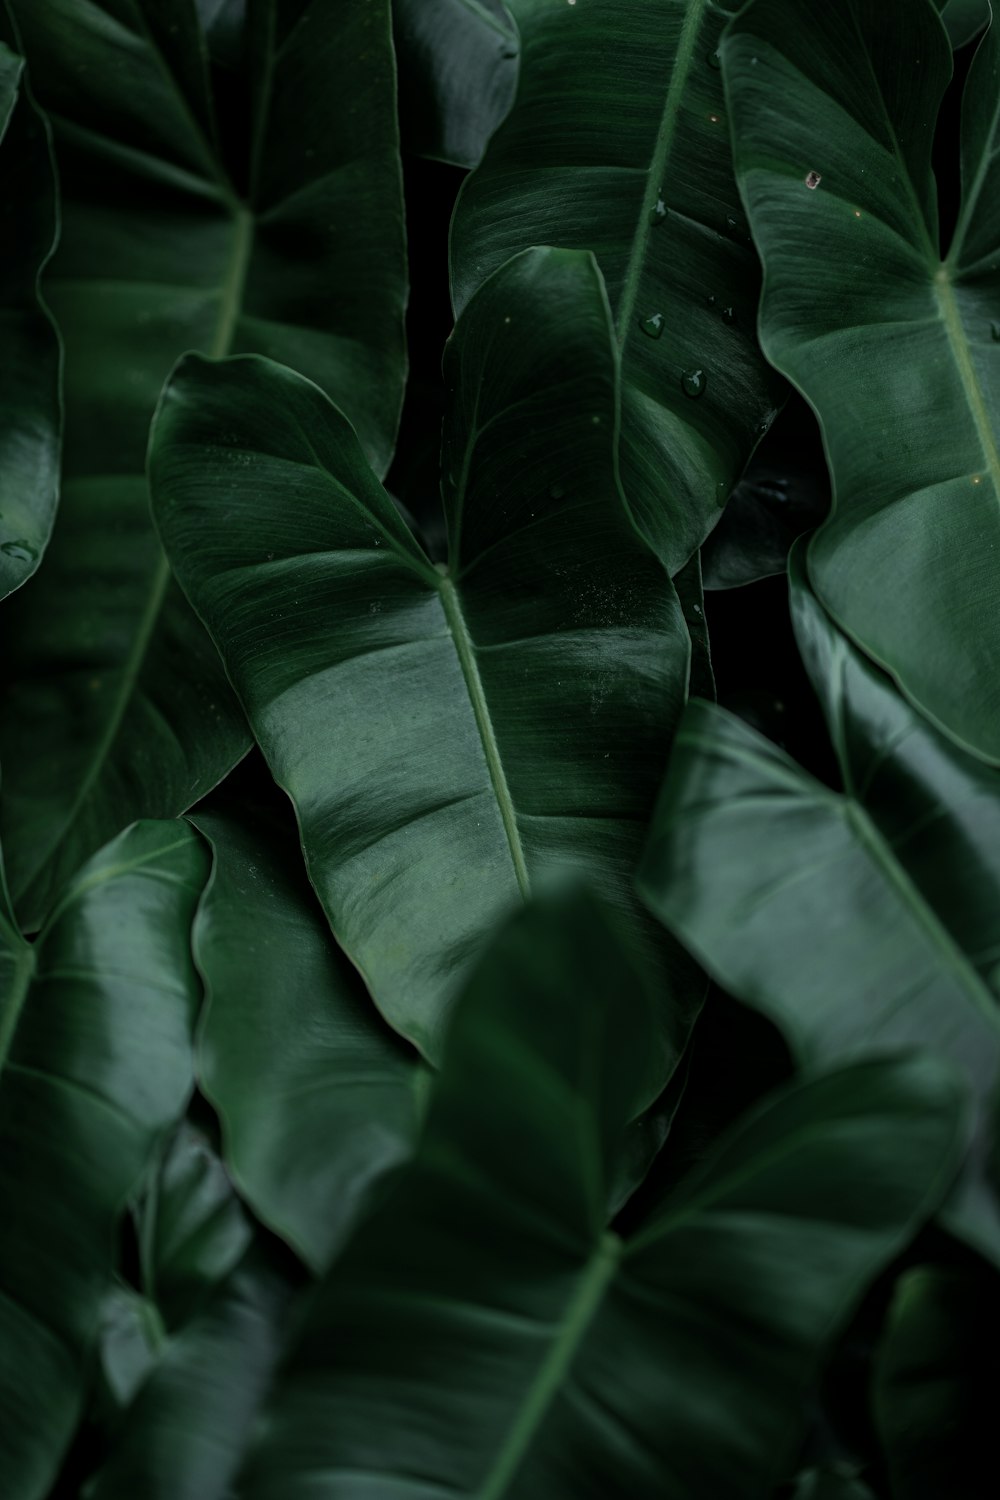 큰 녹색 잎이 많은 식물의 클로즈업